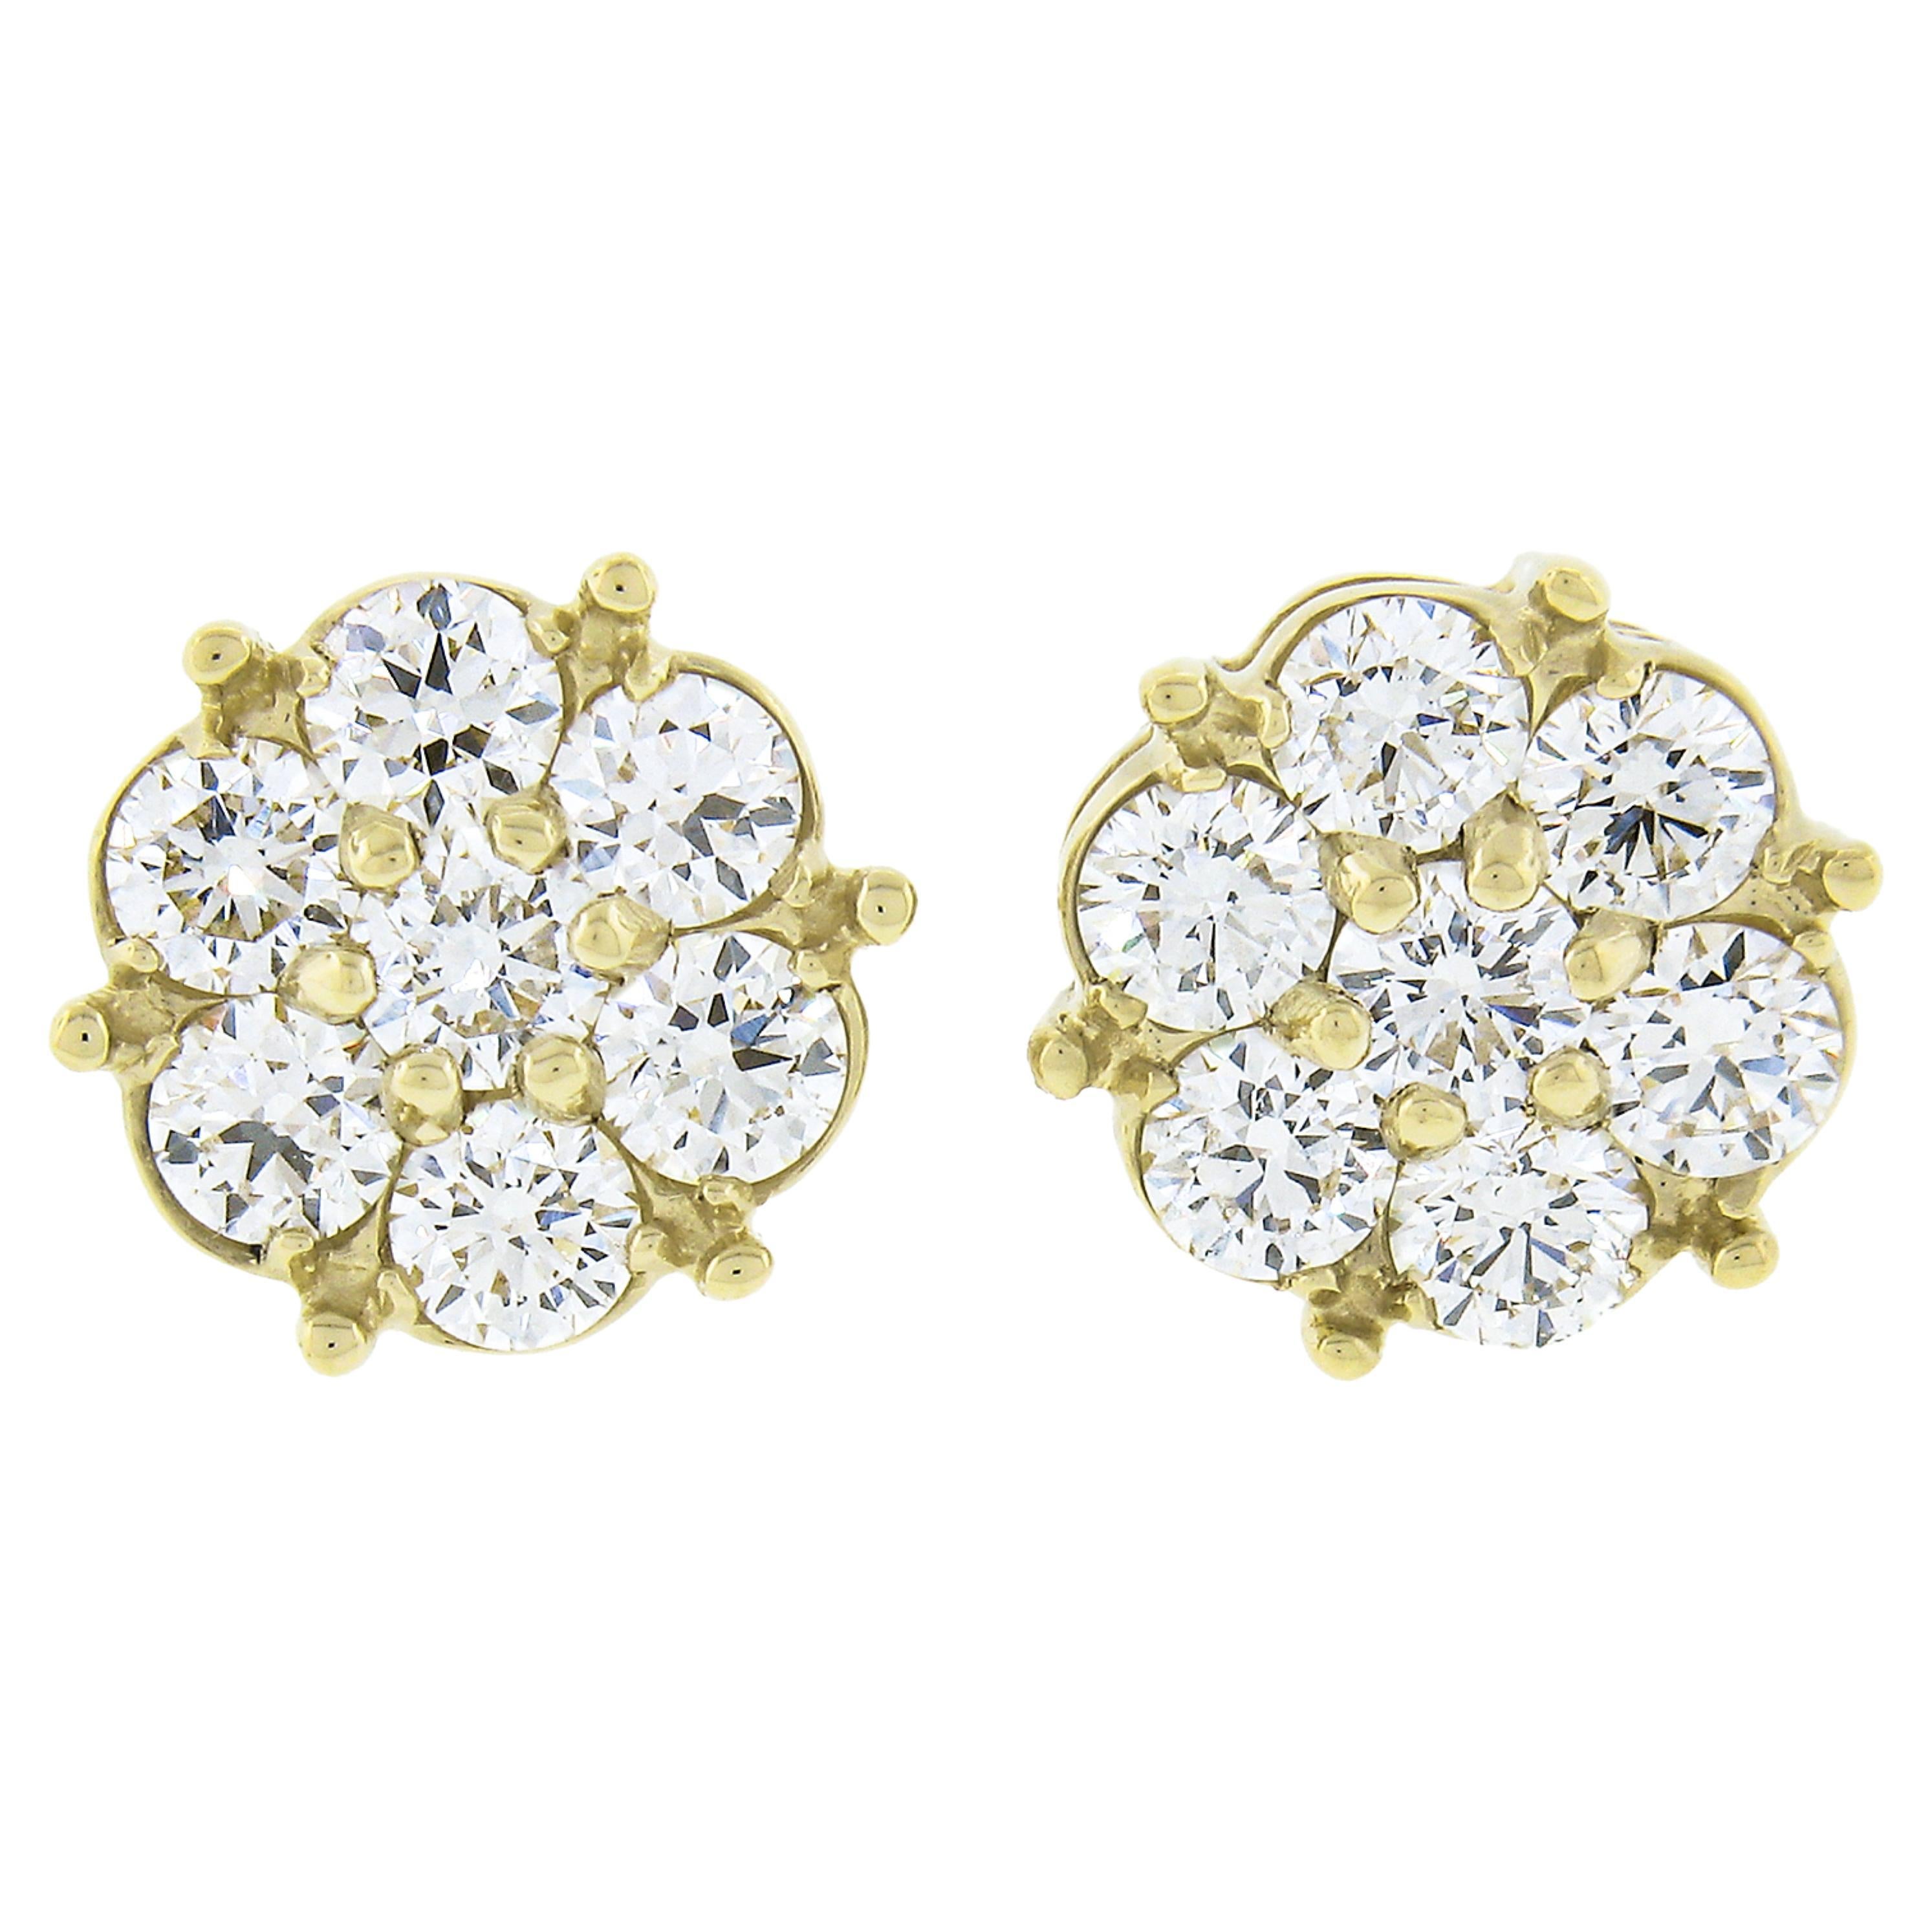 New 14k Yellow Gold 1.22ctw Fiery Brilliant Diamond Cluster Flower Stud Earrings